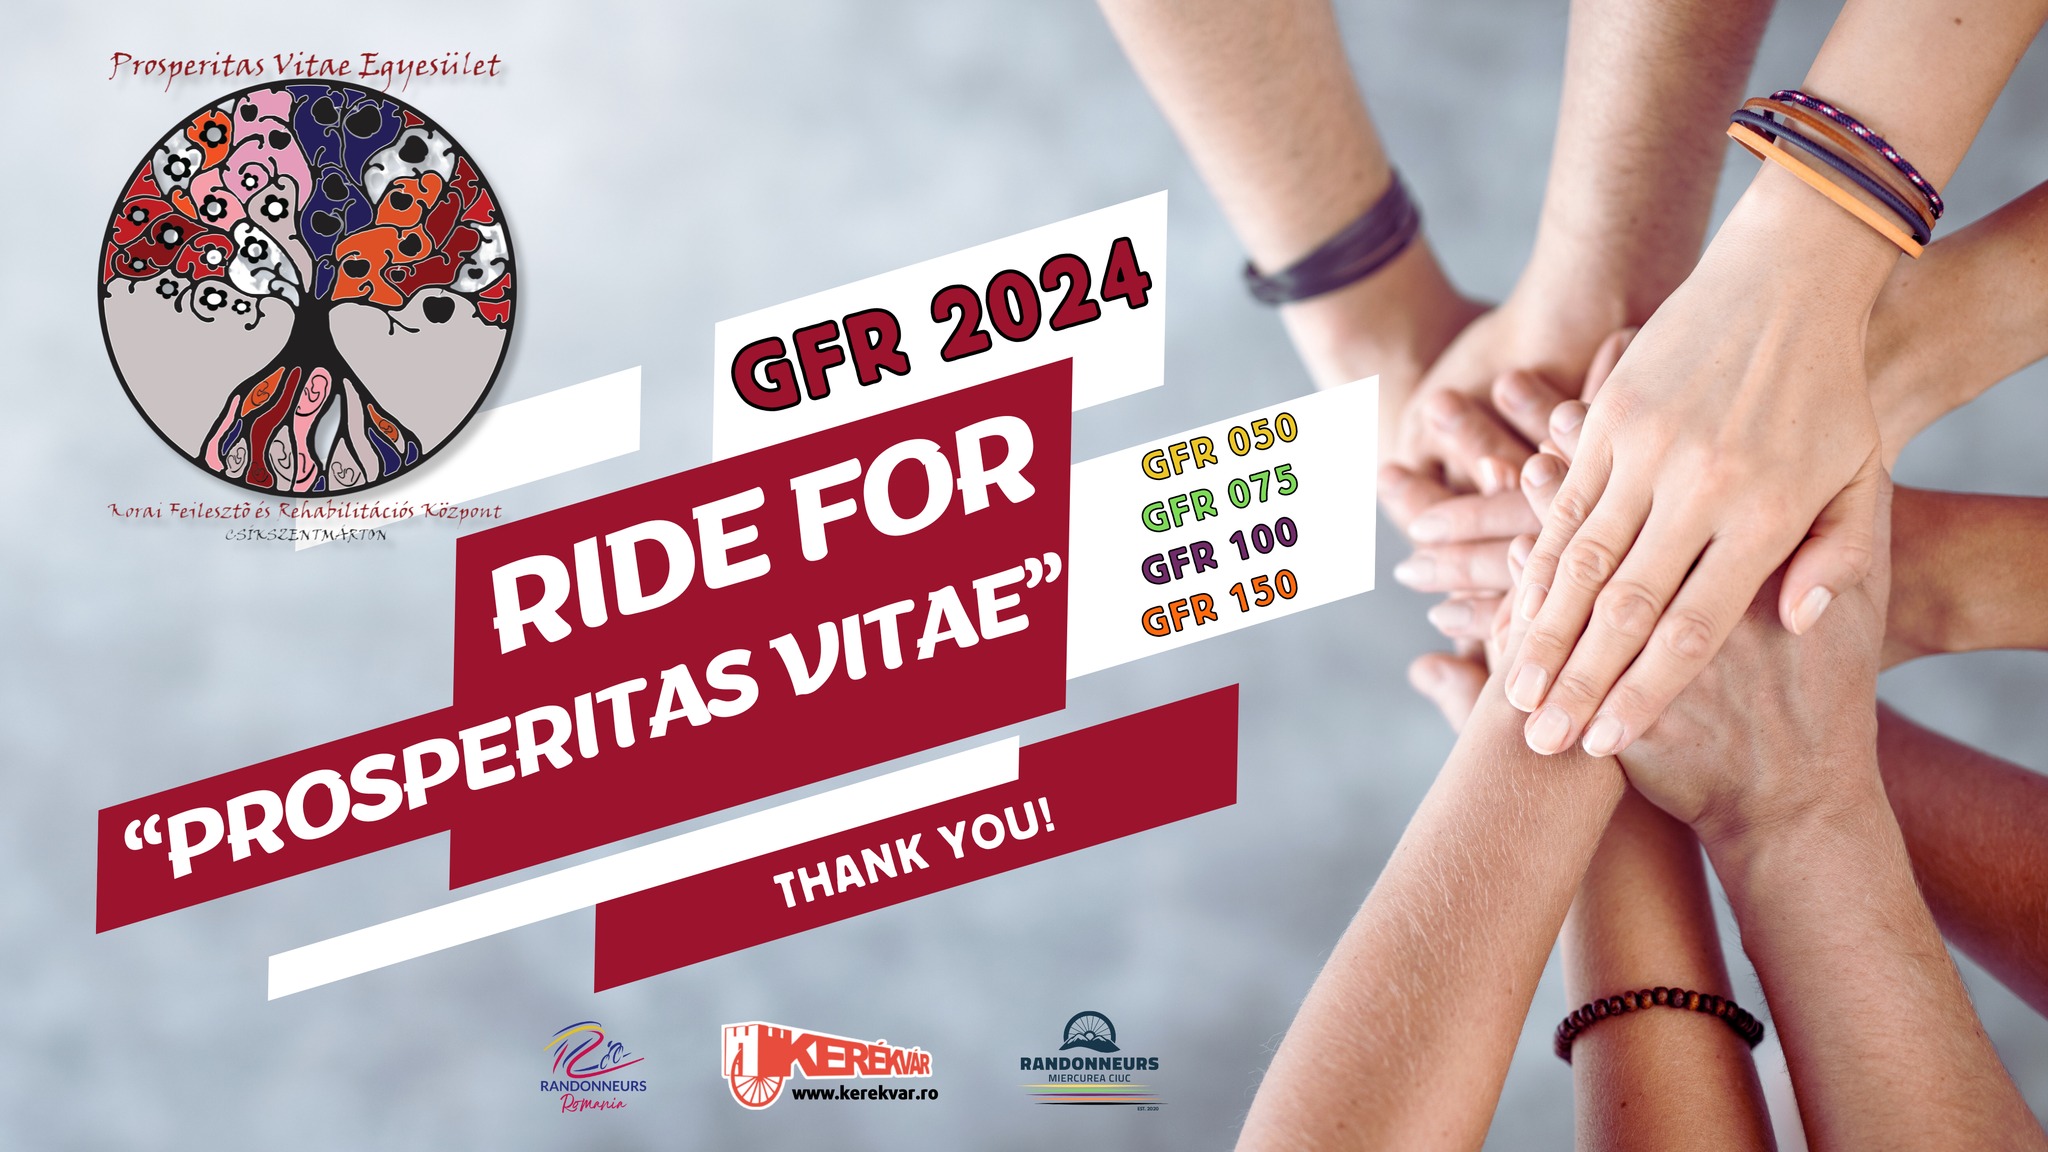 GFR 2024 - Ride for "PROSPERITAS VITAE"